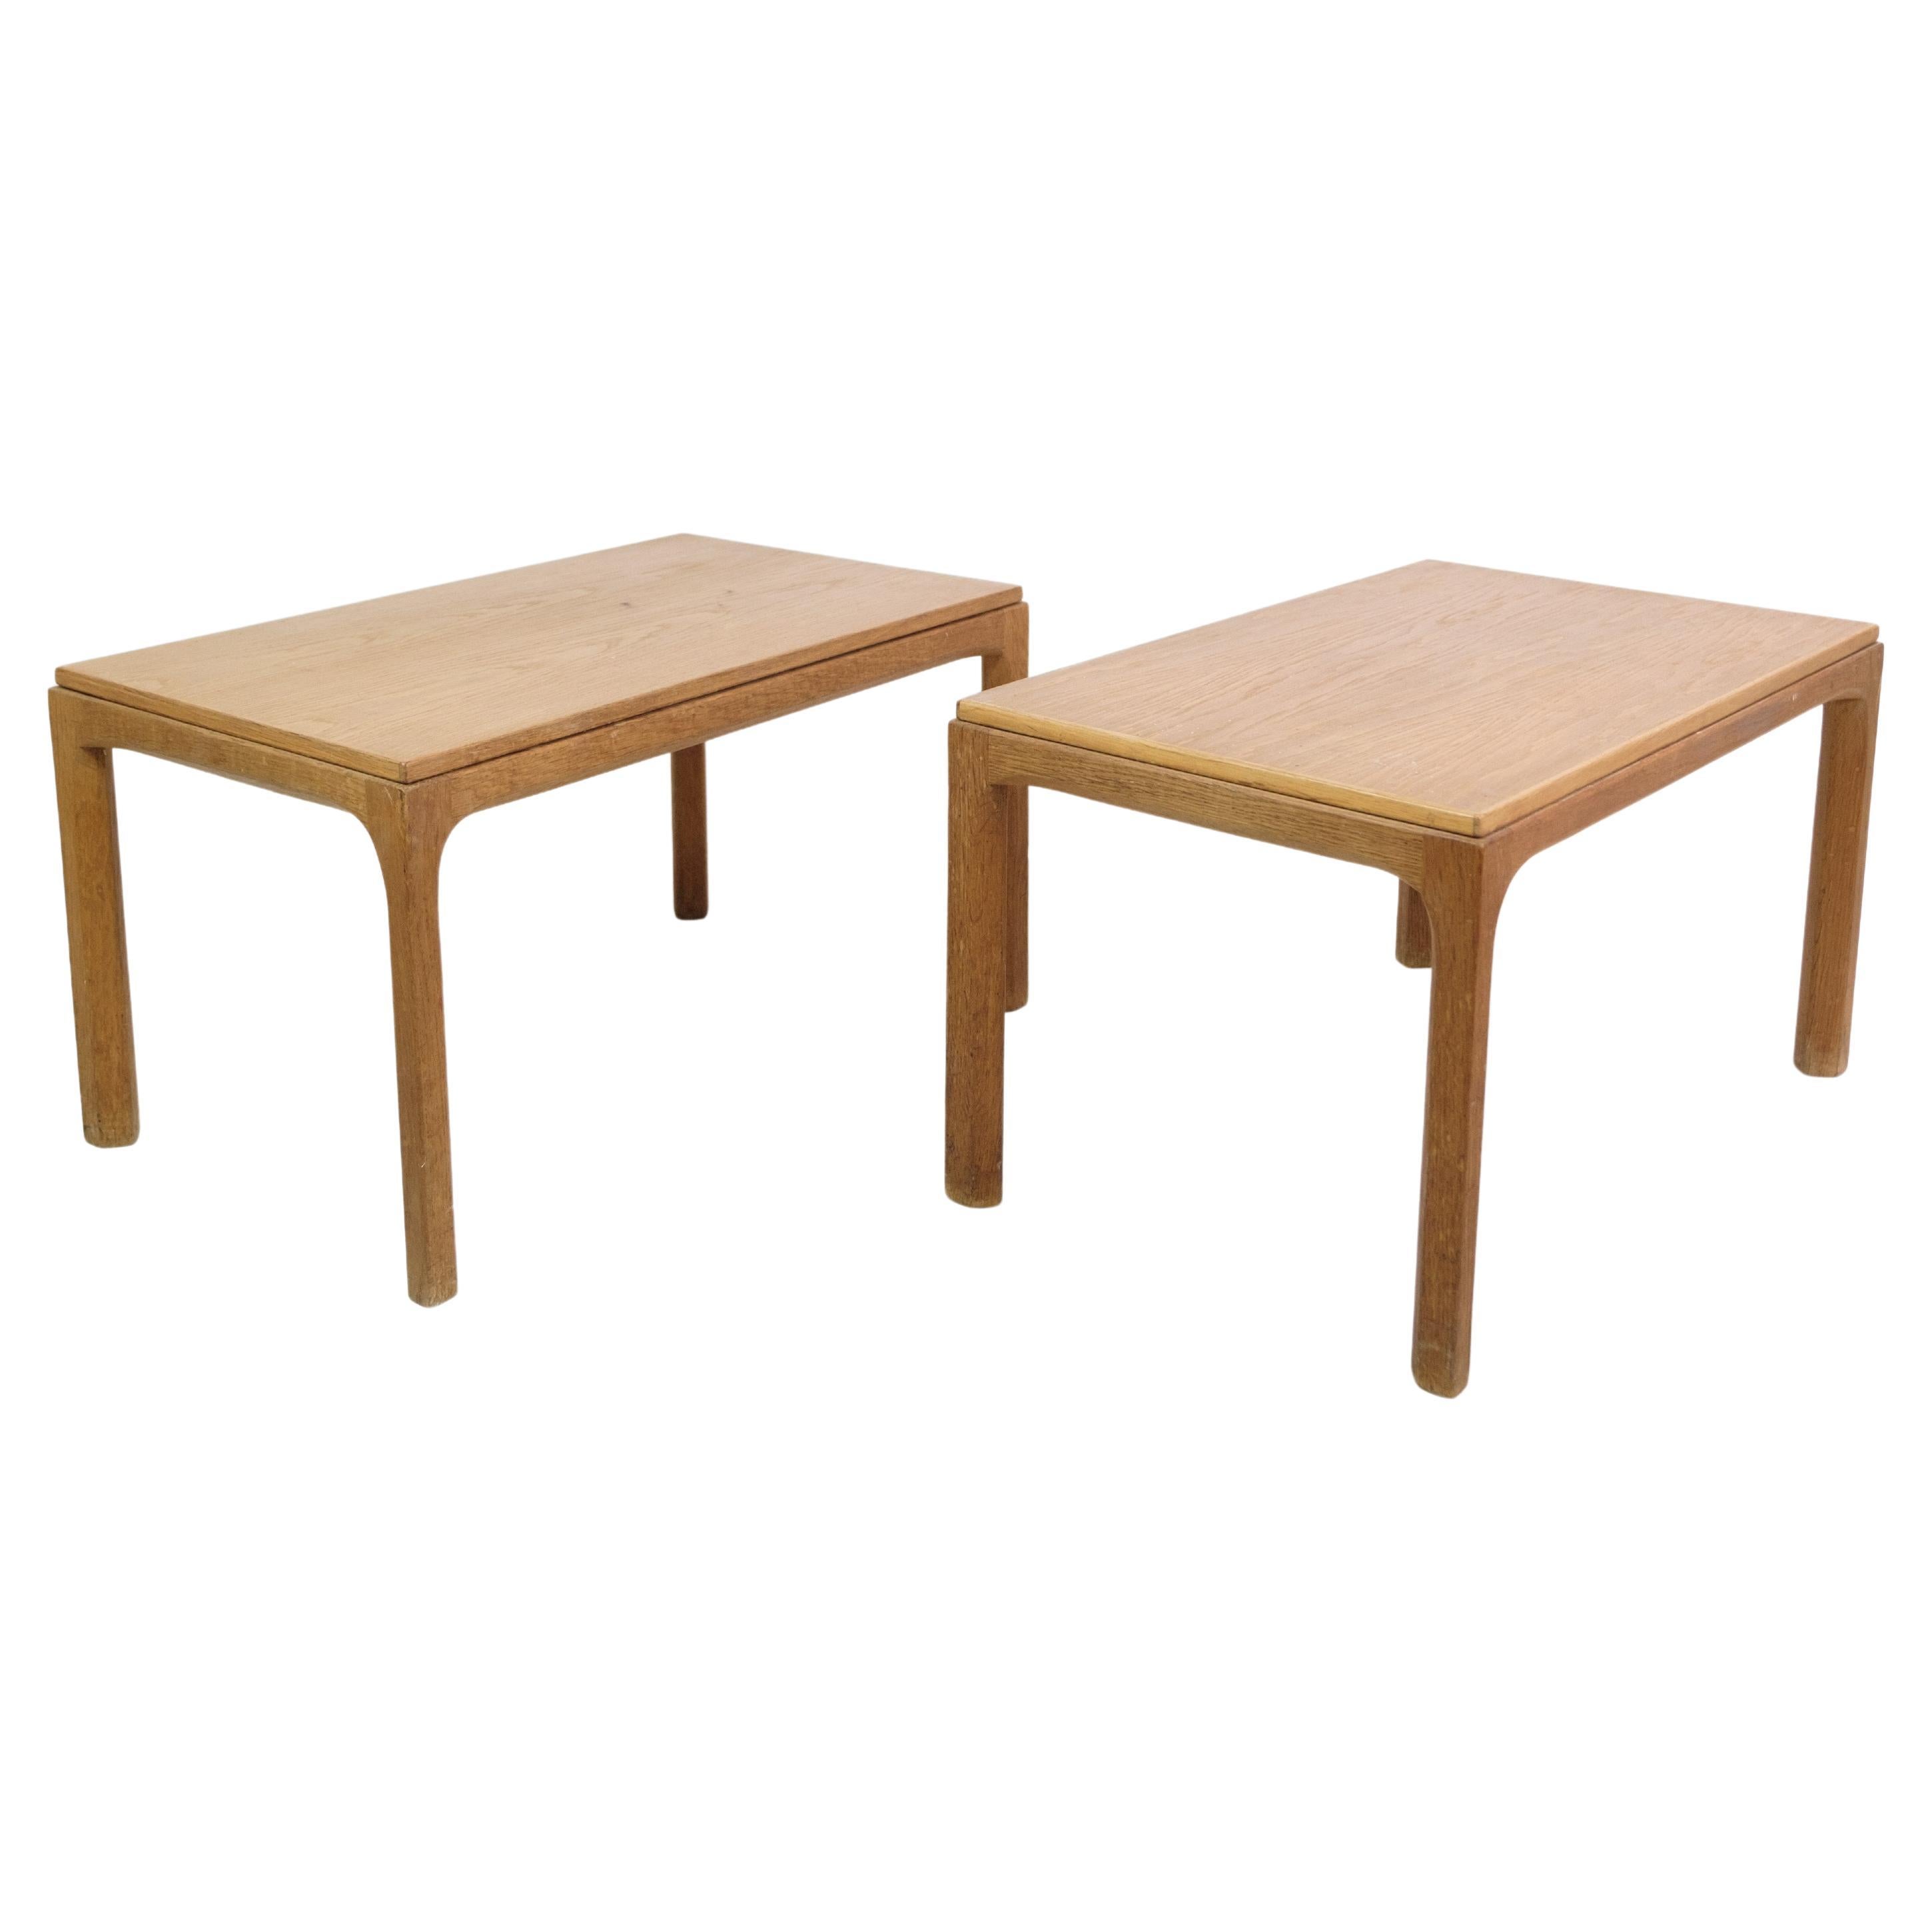 Side tables In Oak, Model 381 Designed By Aksel Kjersgaard Odder From 1960s